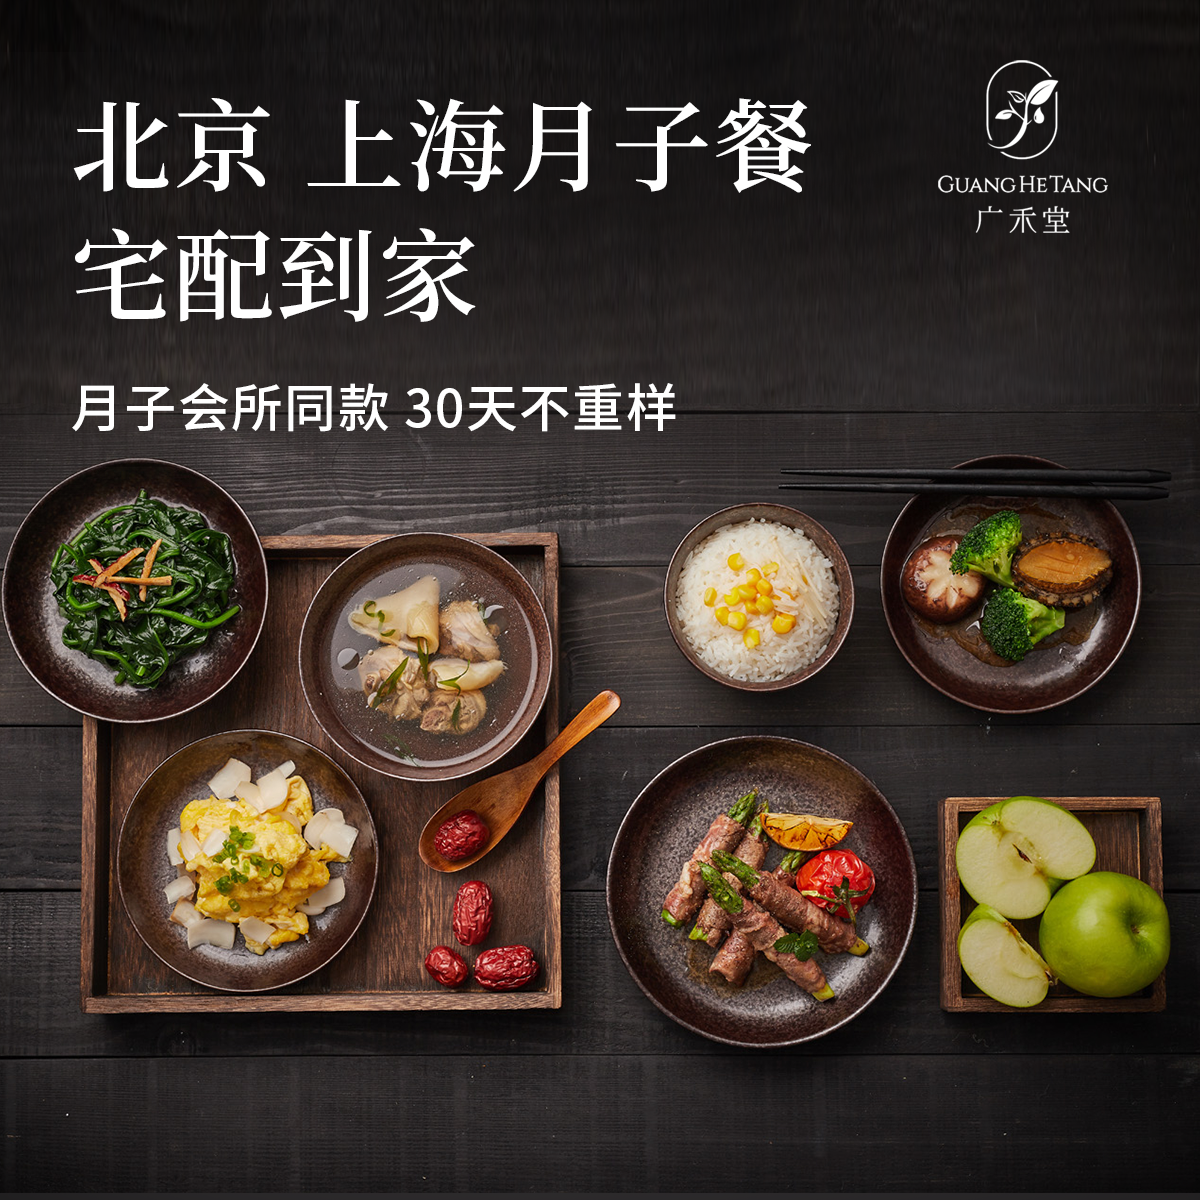 广禾堂 北京上海月子餐宅配外送30日私人订制试吃餐非邮寄